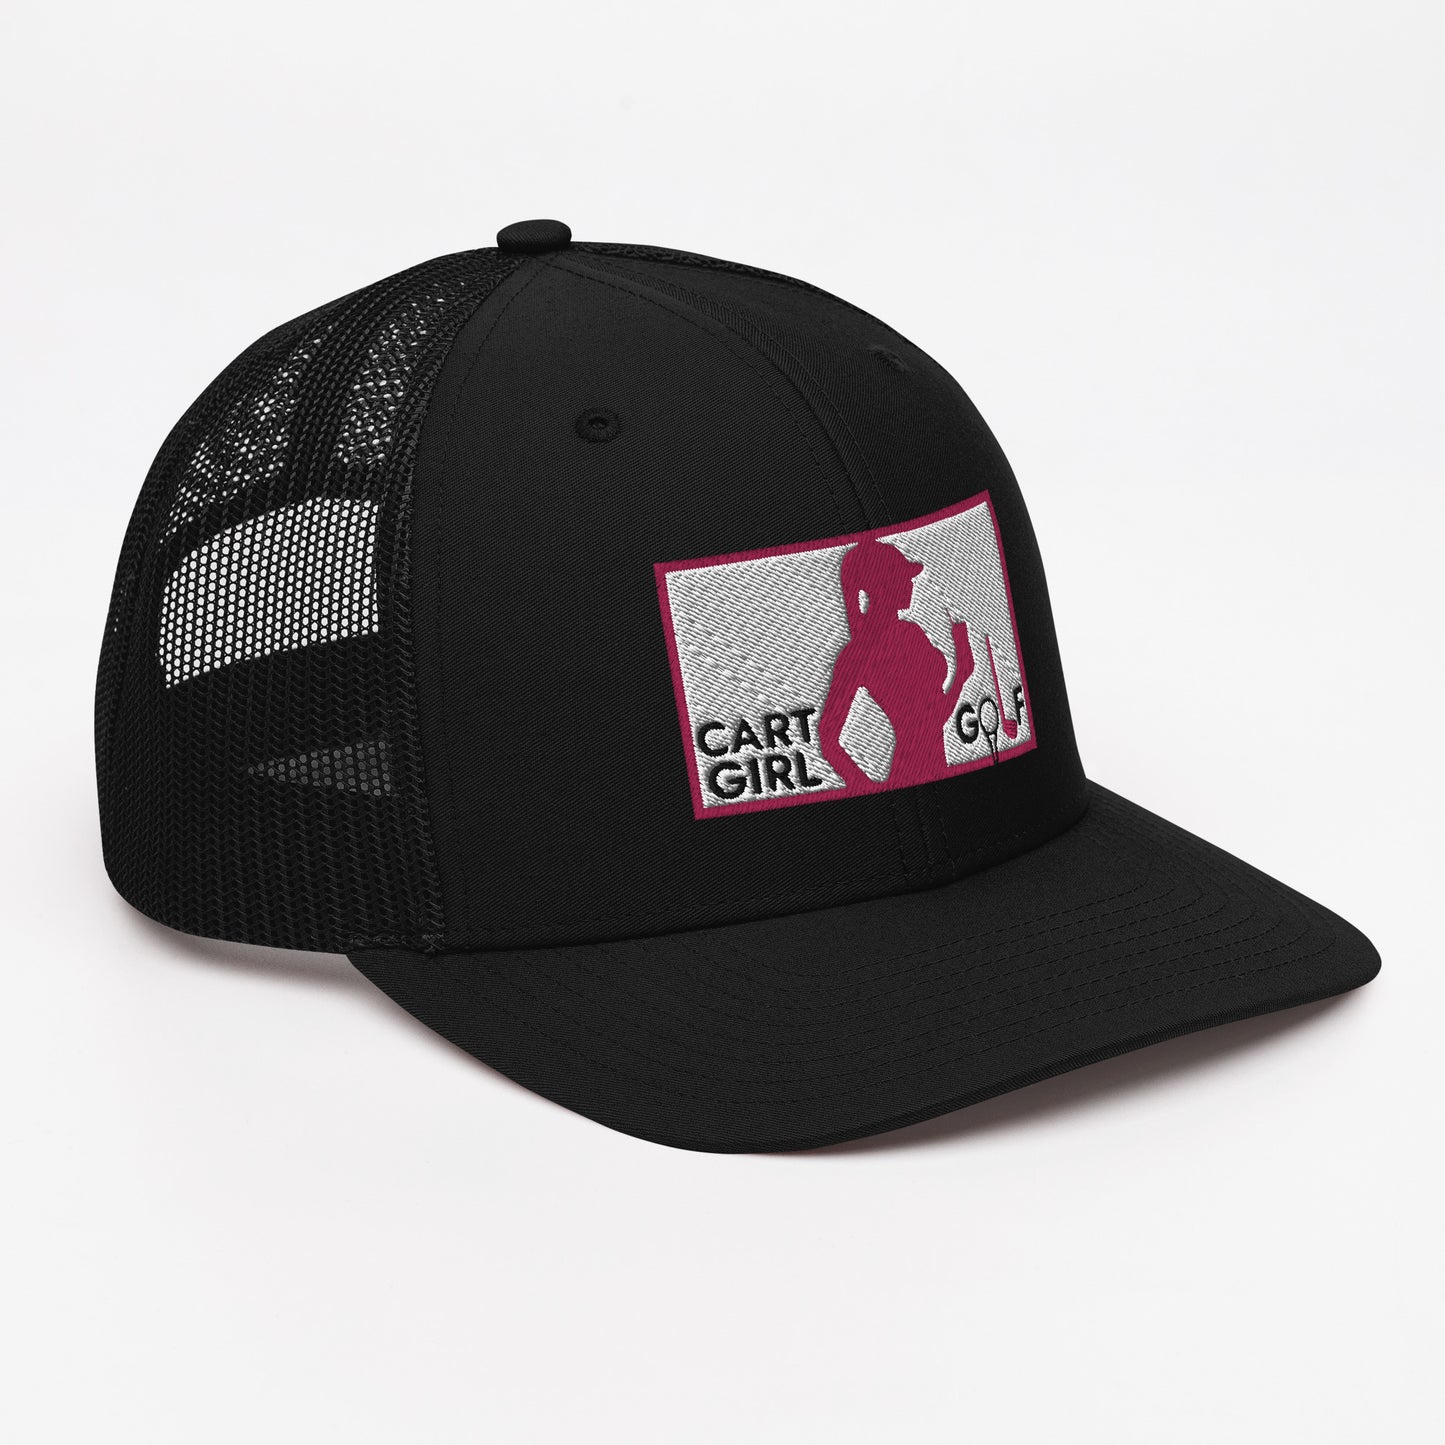 "Cart Girl Golf" Trucker Cap